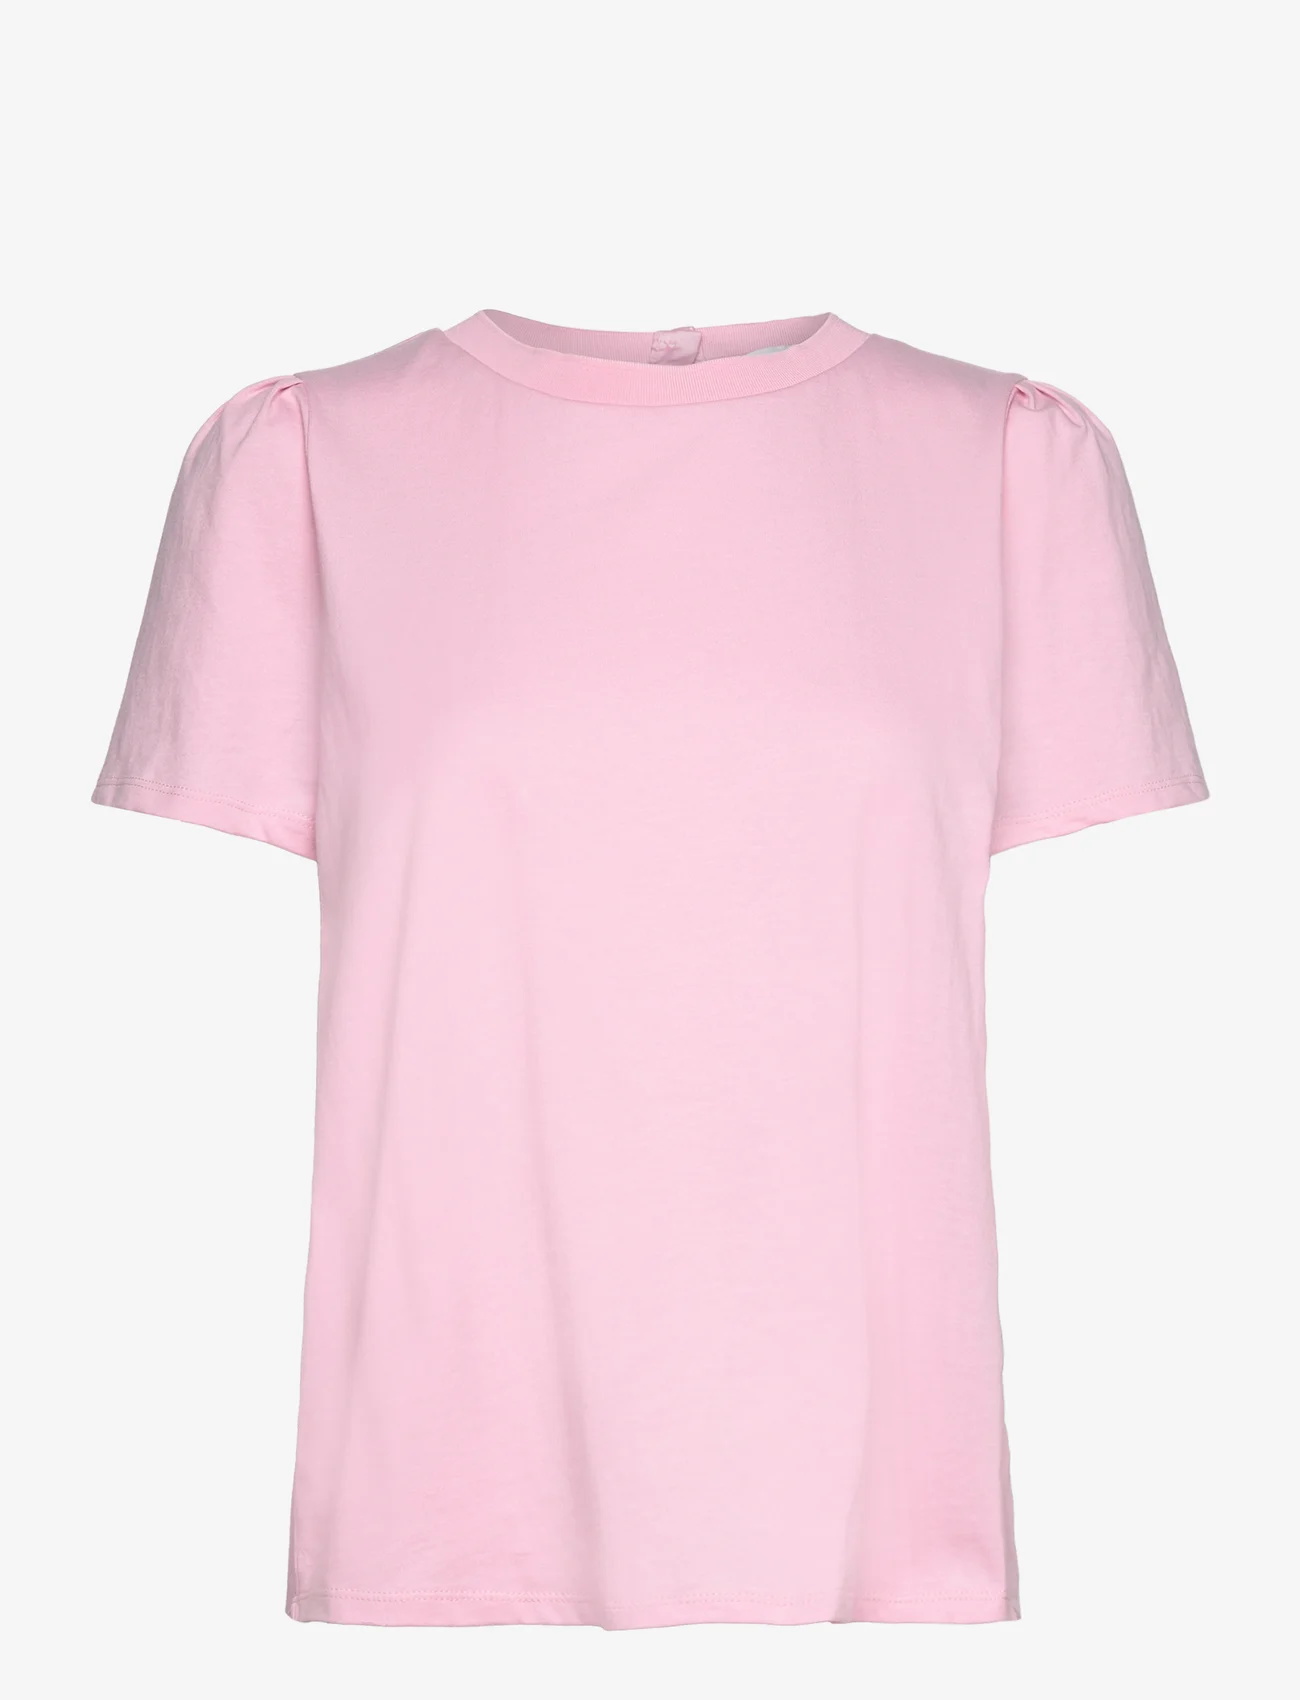 Levete Room - LR-KOWA - t-shirts & tops - l430 - powder pink - 0